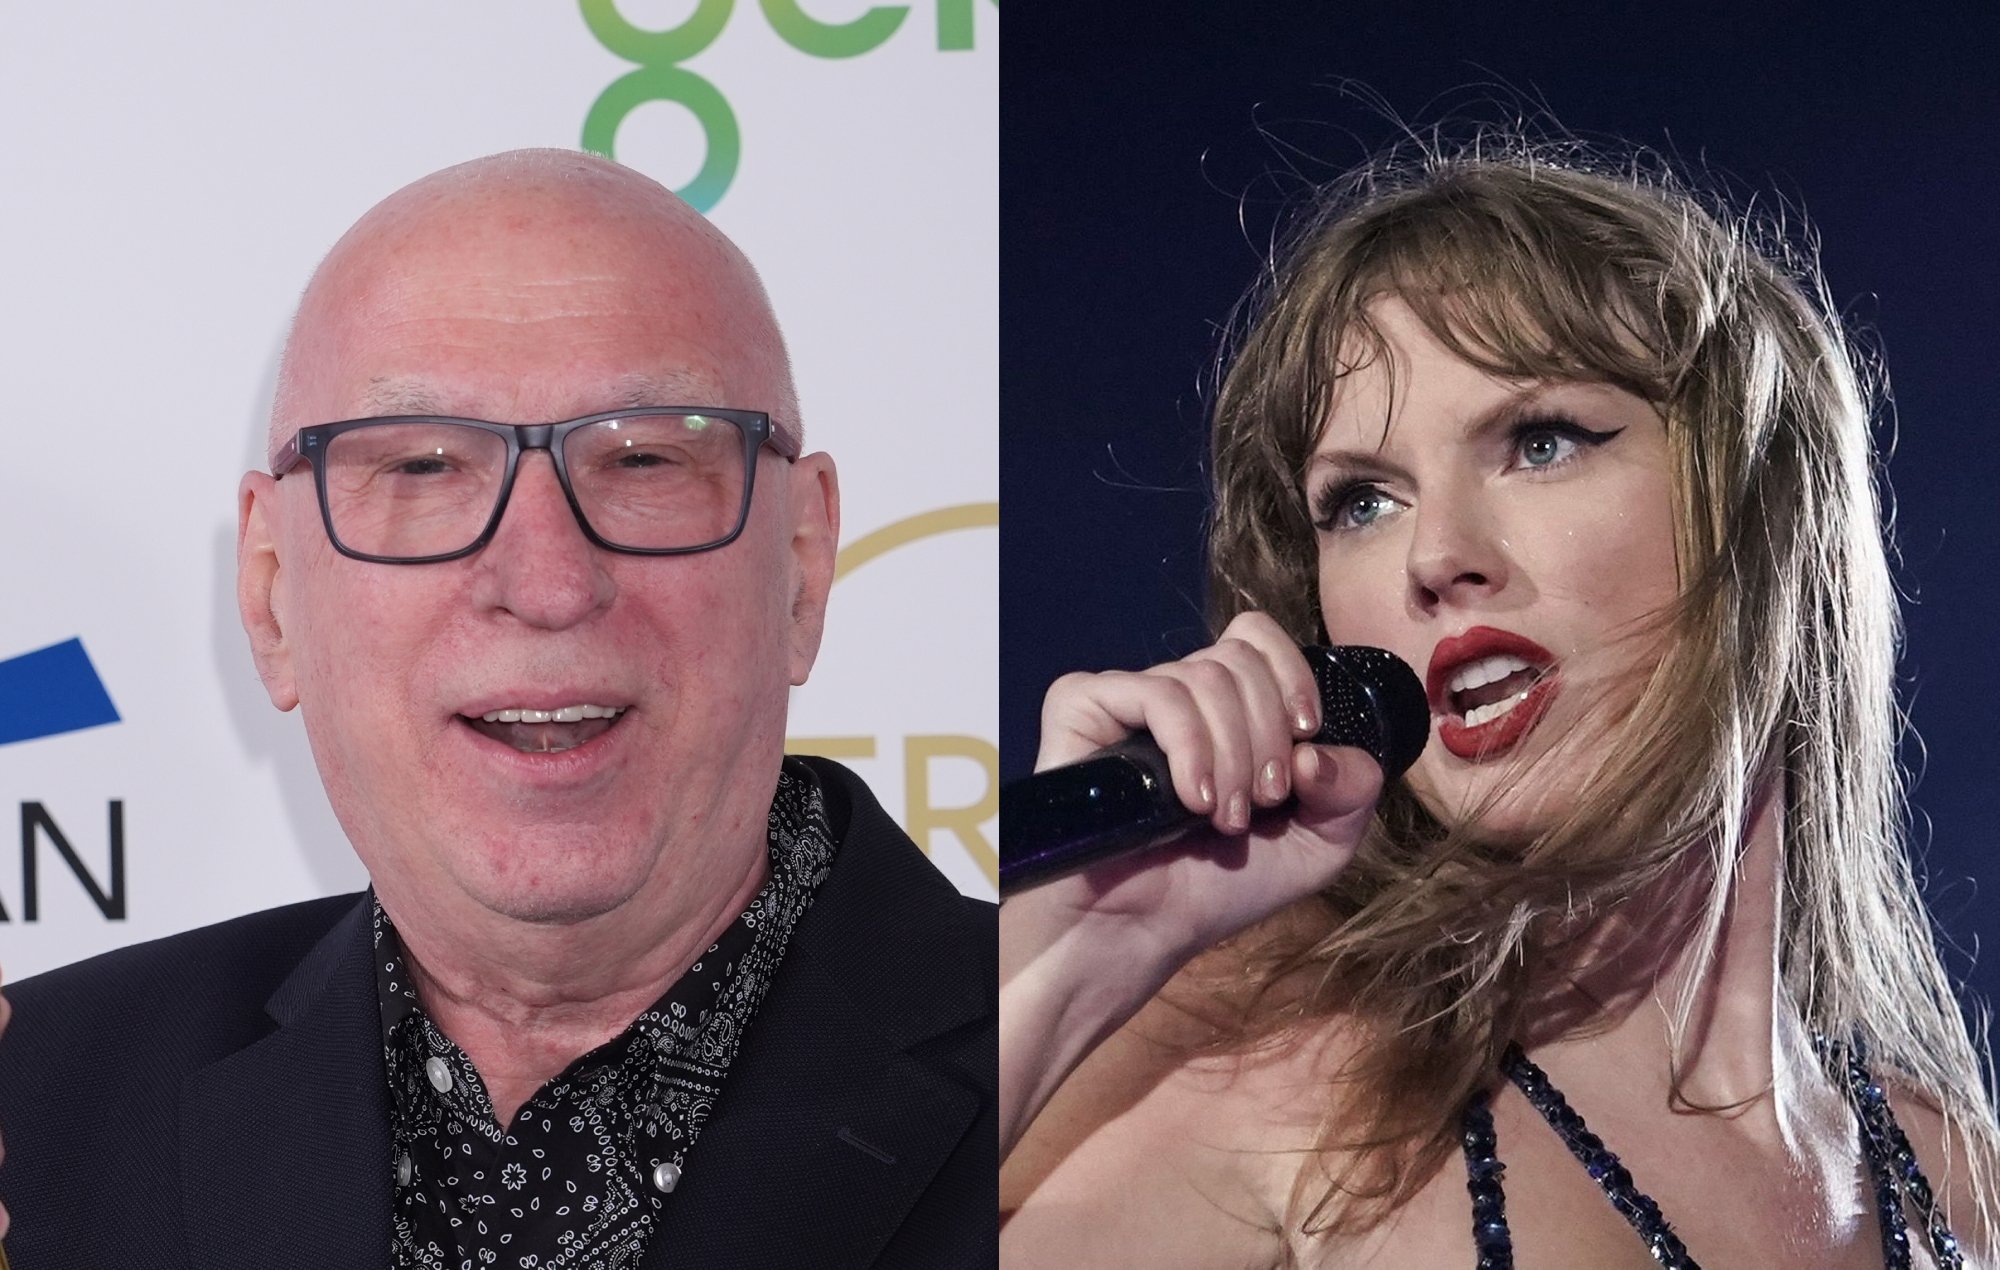 Radio presenter Ken Bruce sparks backlash for Taylor Swift remarks